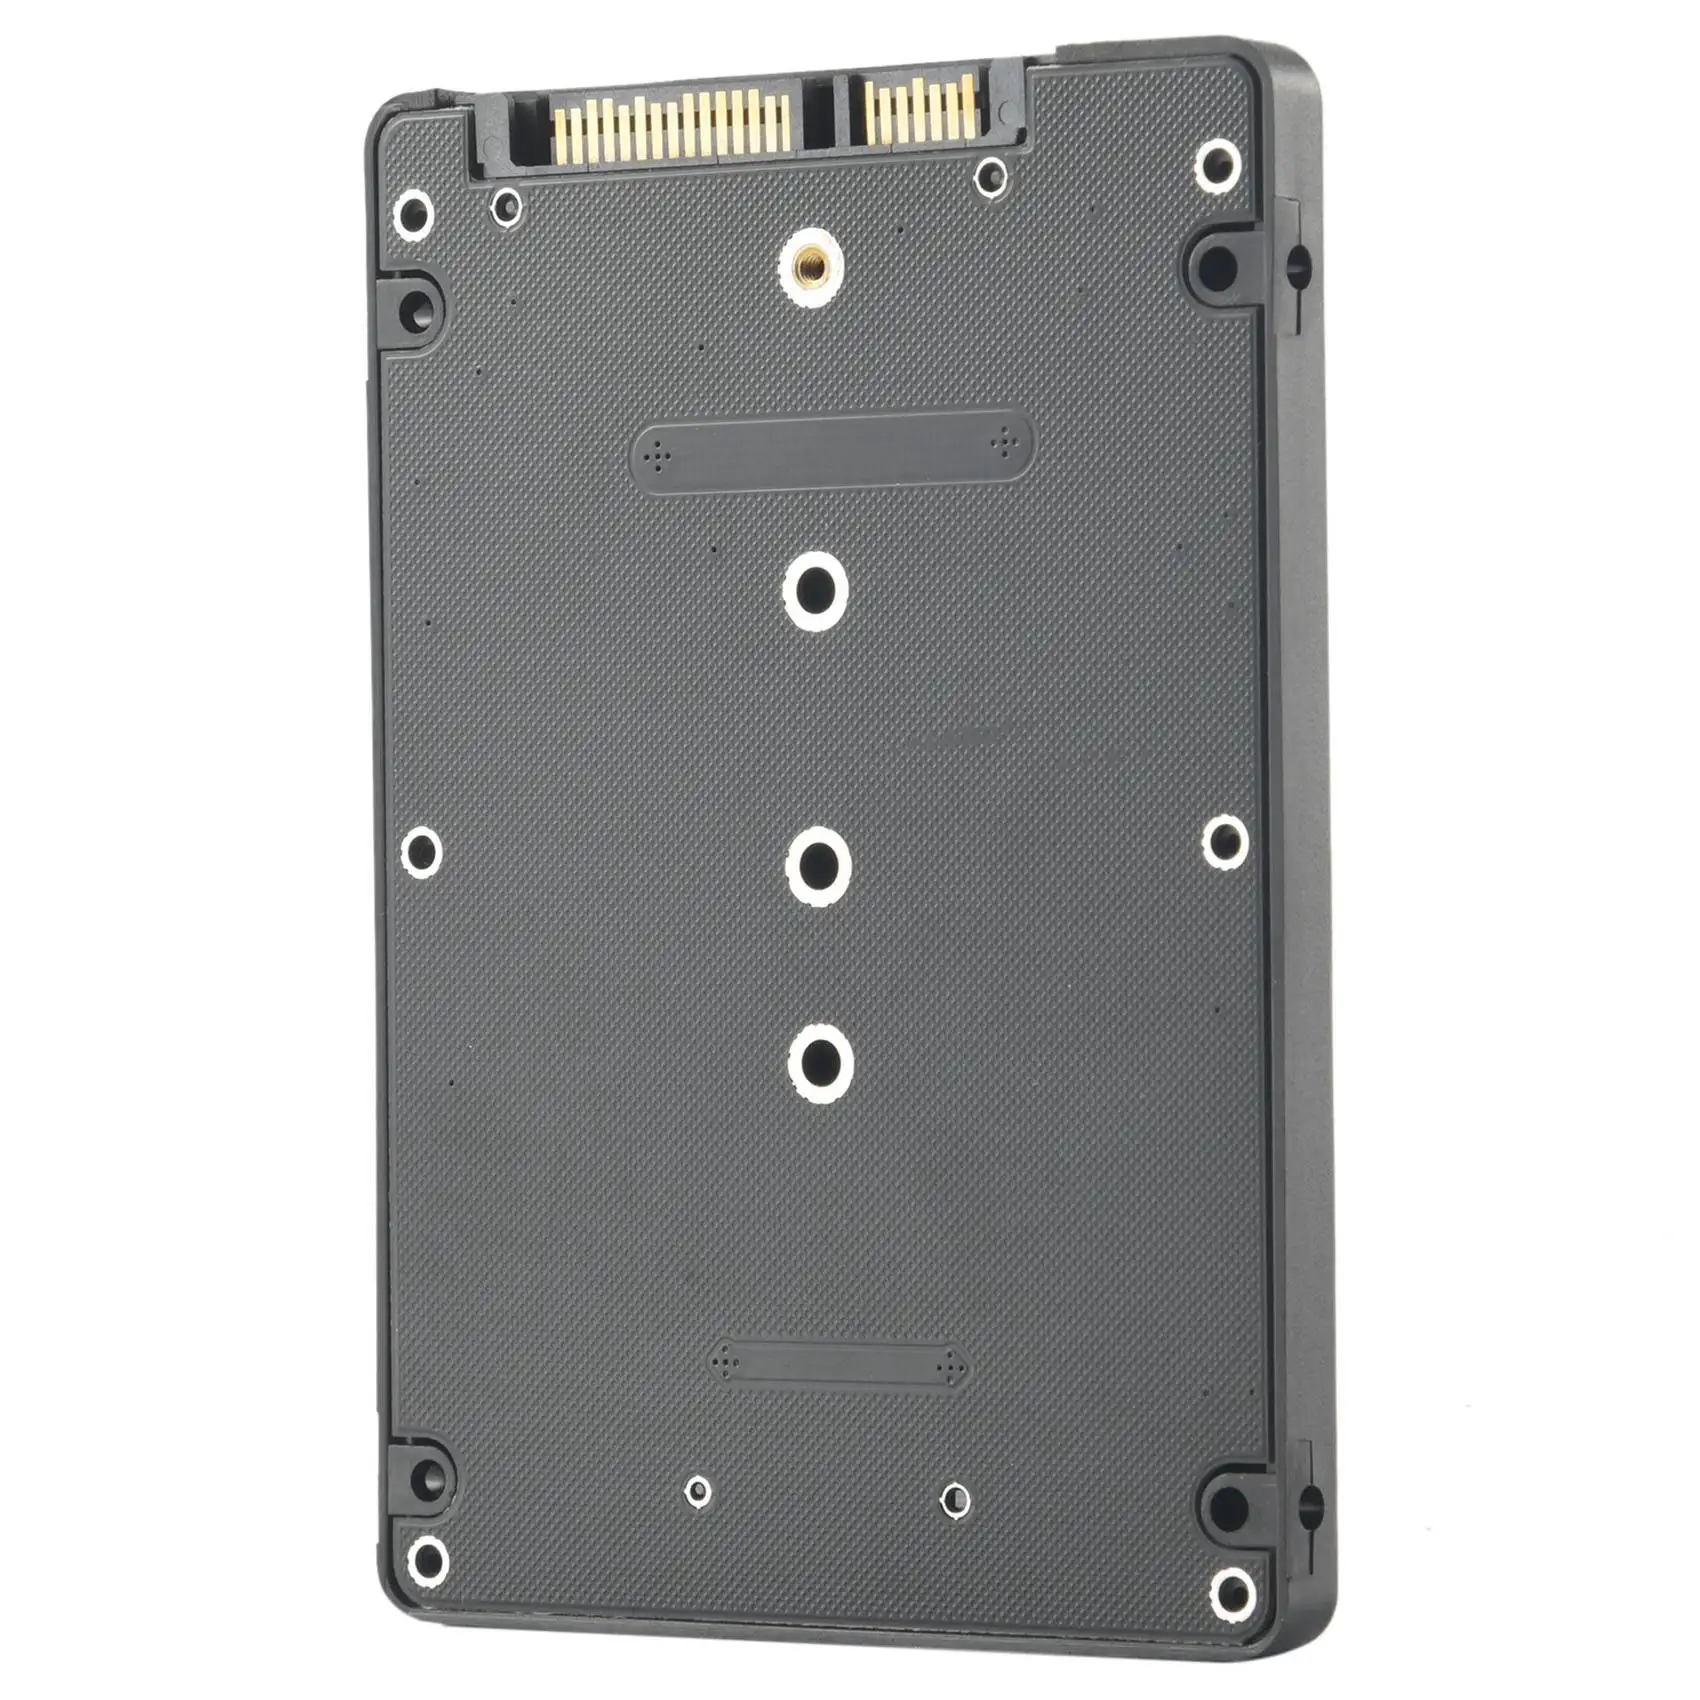 

M.2 NGFF (SATA) SSD to 2.5 inch SATA Adapter Card 8mm Thickness Enclosure